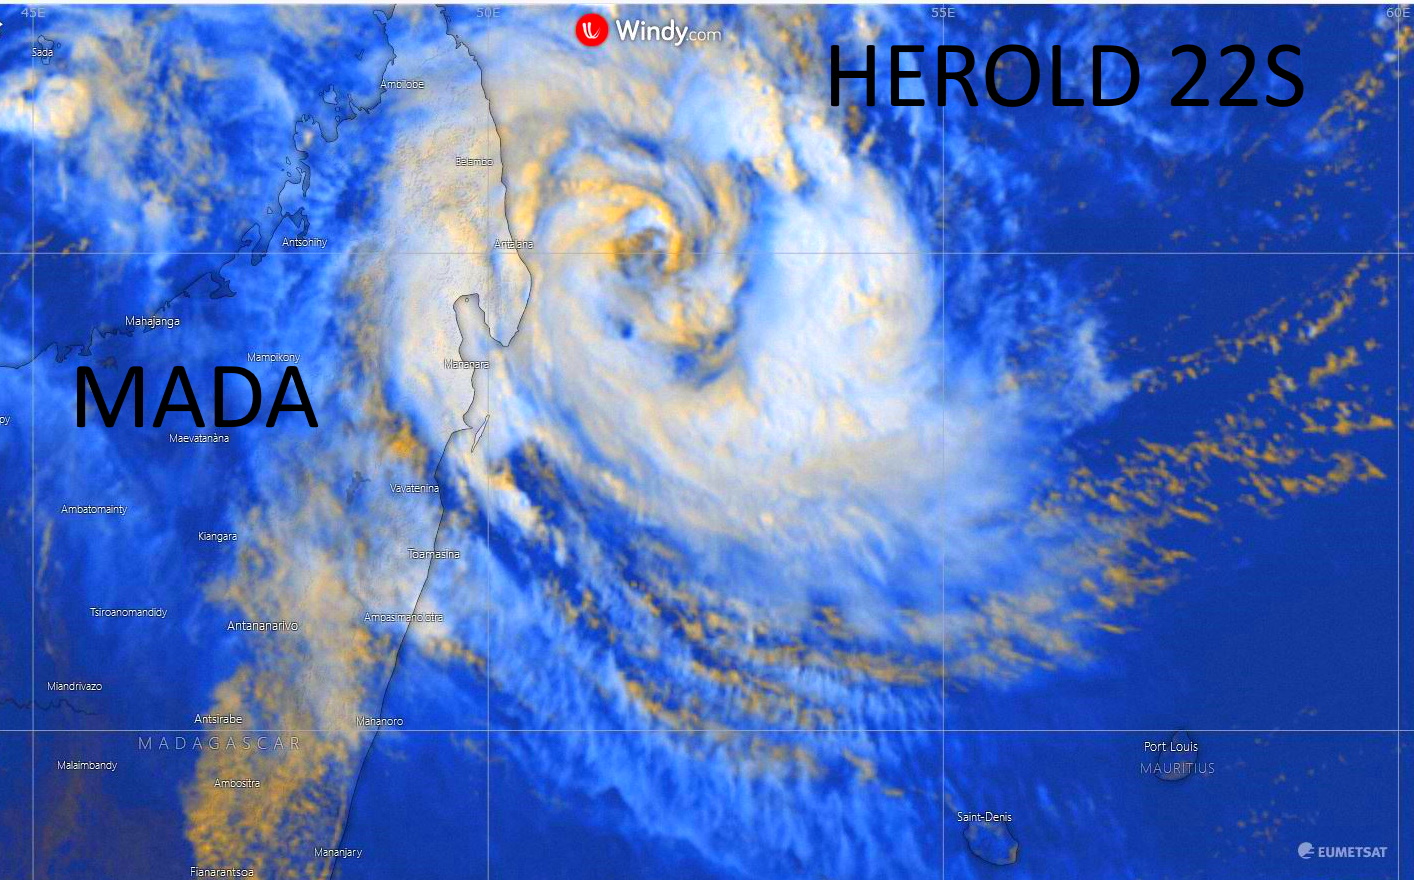 [Météo France] Dimanche 10h: la forte tempête tropicale Herold se déplace lentement vers l'Est 